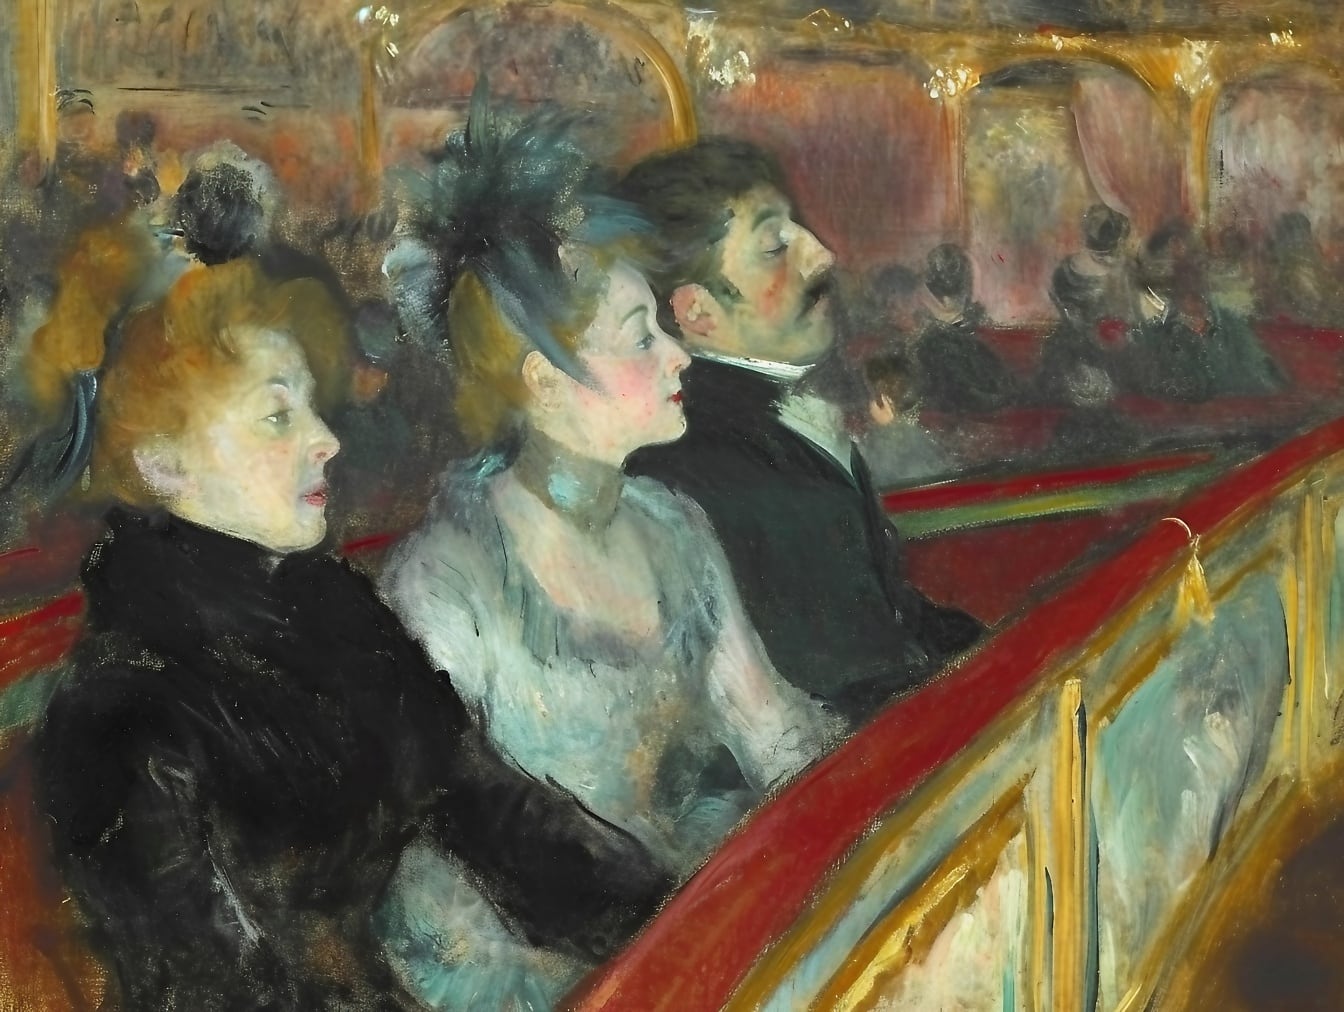 Ελαιογραφία ομάδας ανθρώπων που κάθονται σε μια πρώτη σειρά θεάτρου που απεικονίζει ατμόσφαιρα του 19ου αιώνα